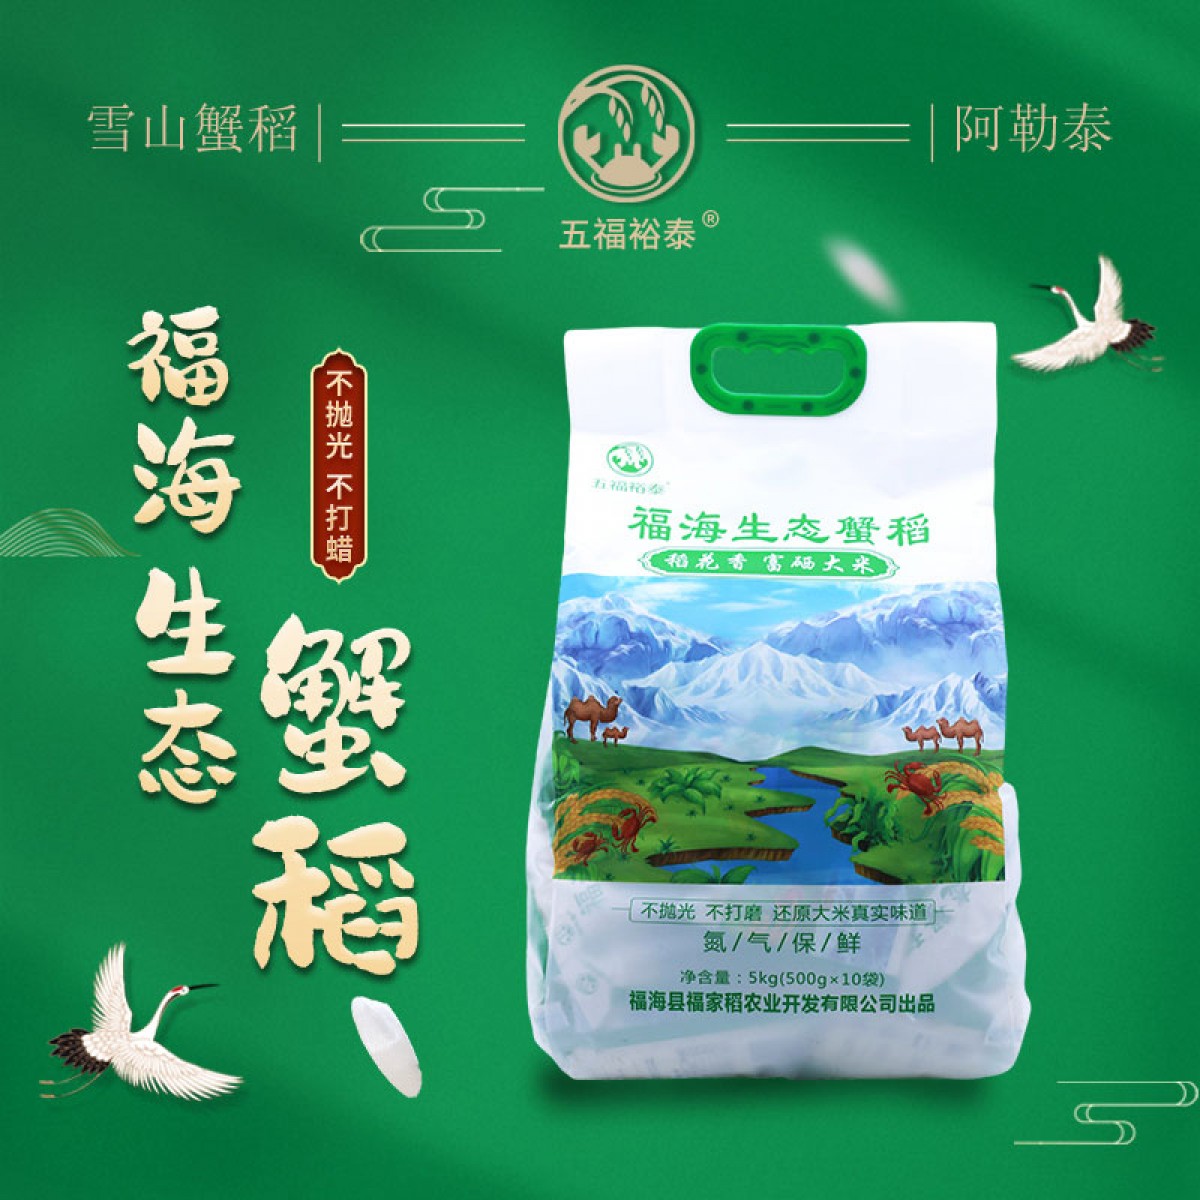 五福裕泰新疆阿勒泰雪山蟹稻生态富硒大米500g×10袋